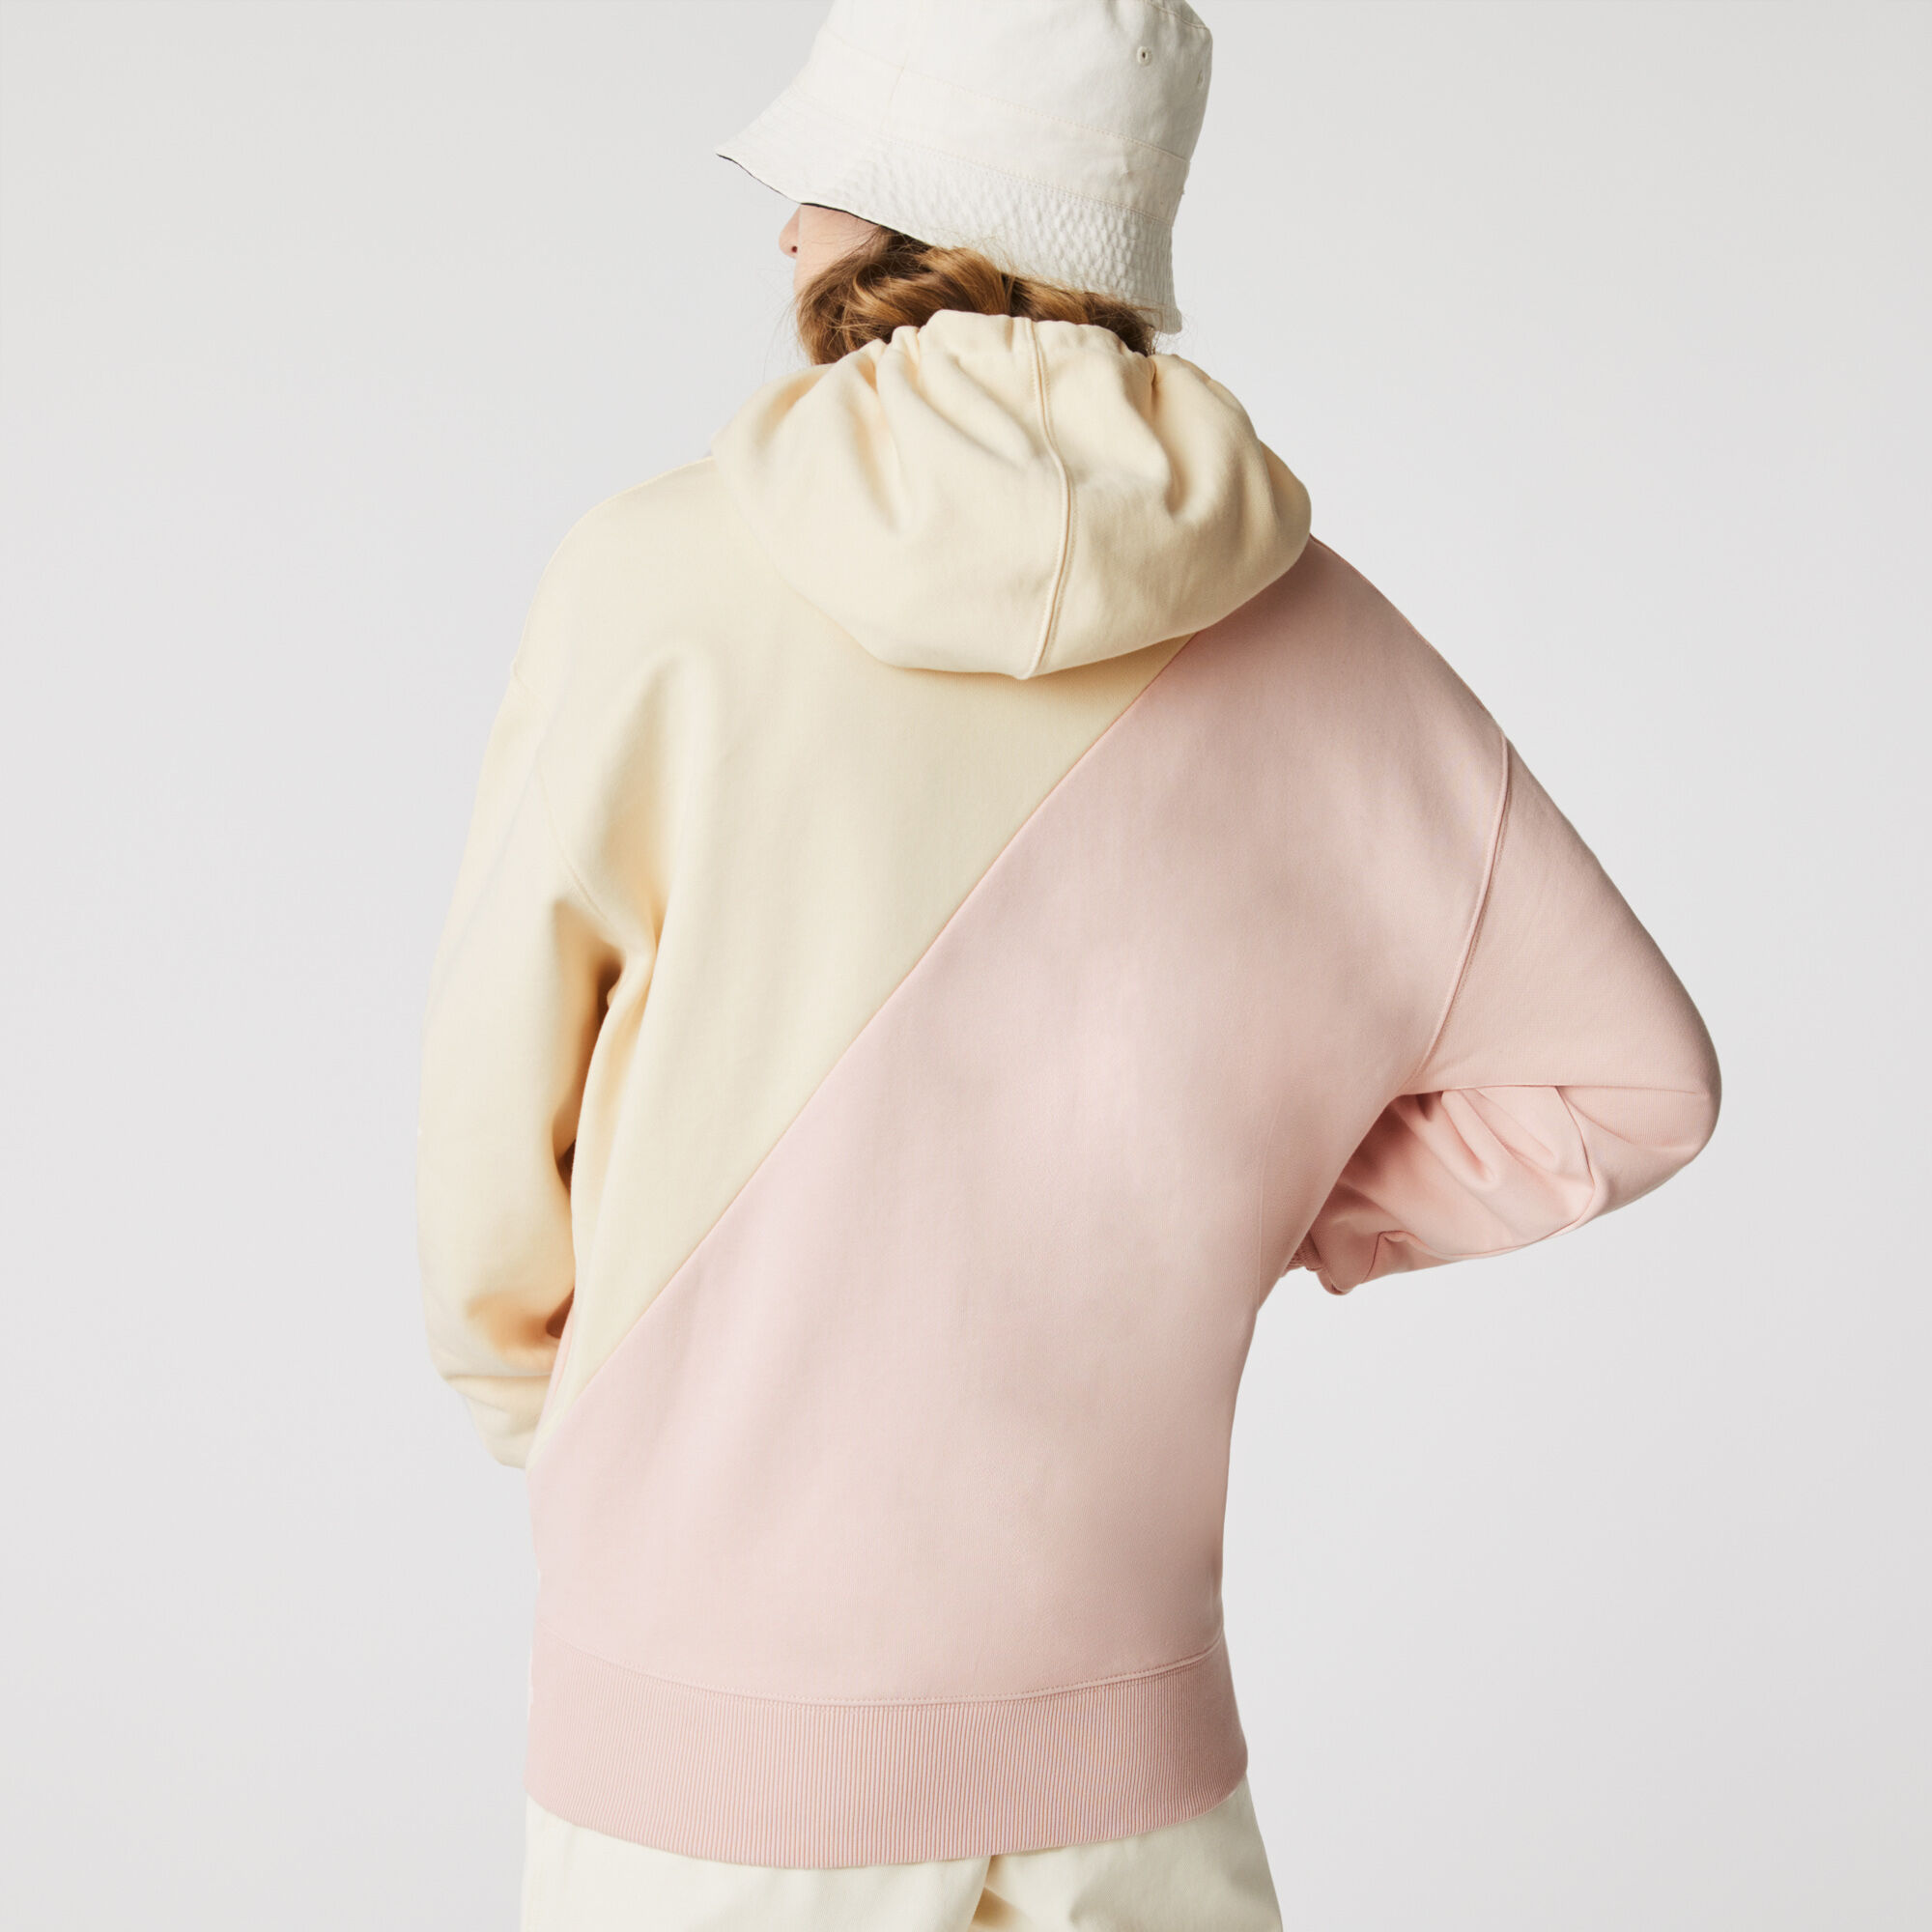 سويت شيرت صوف مزدوج اللون بغطاء رأس وقصة فضفاضة للجنسين مجموعة Lacoste LIVE